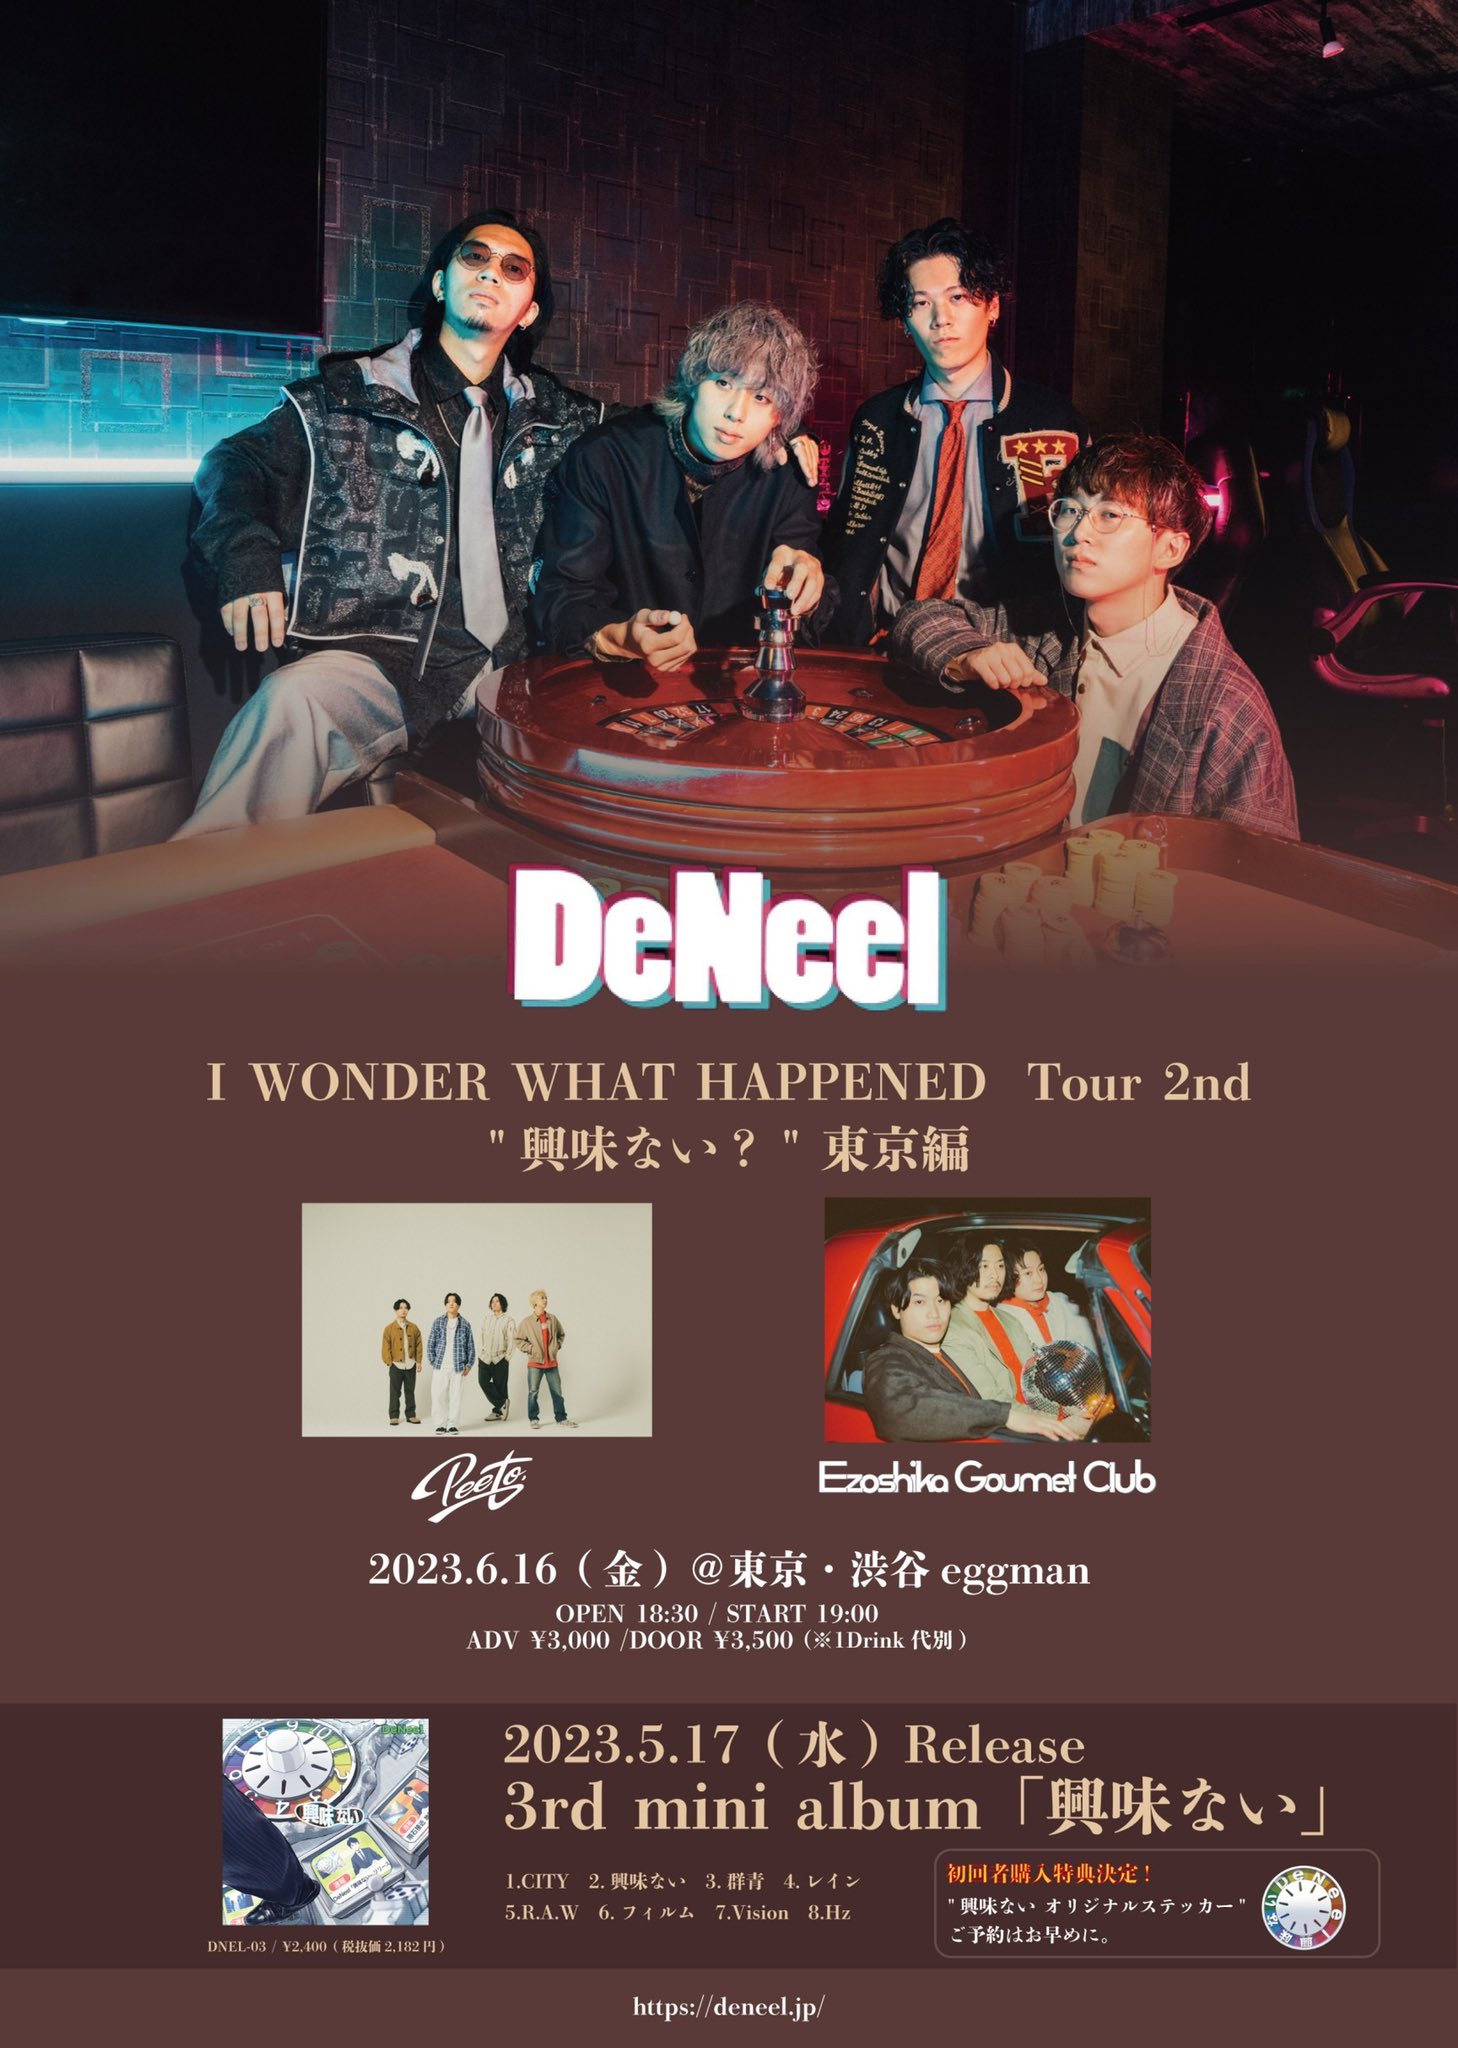 DeNeel 3rd mini album「興味ない」 I WONDER WHAT HAPPENED  Tour 2nd “興味ない？” 東京編